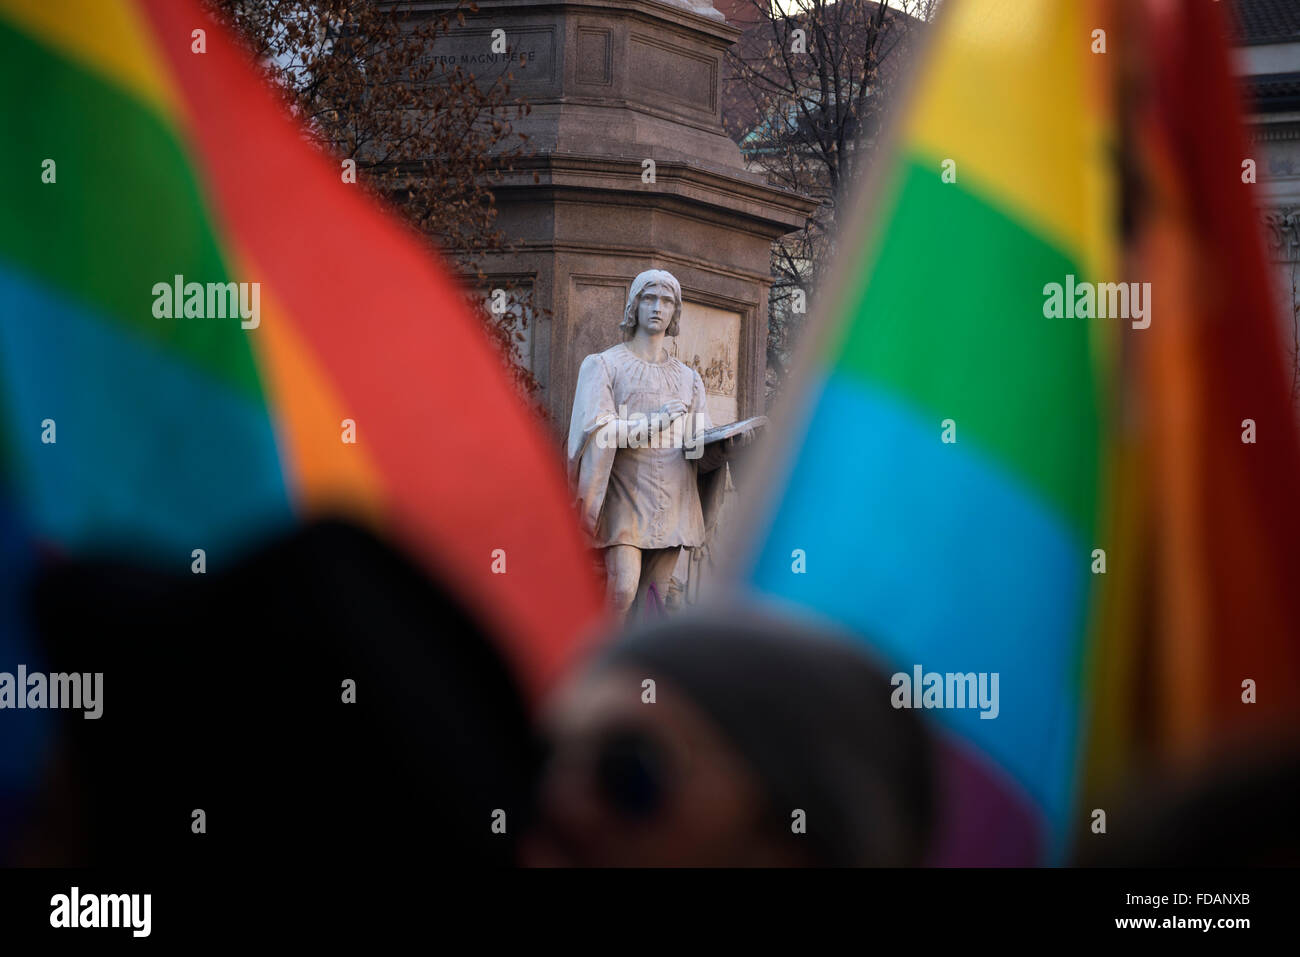 Milano, Italia, Gennaio 2016: le unioni di persone del medesimo sesso di dimostrazione Foto Stock